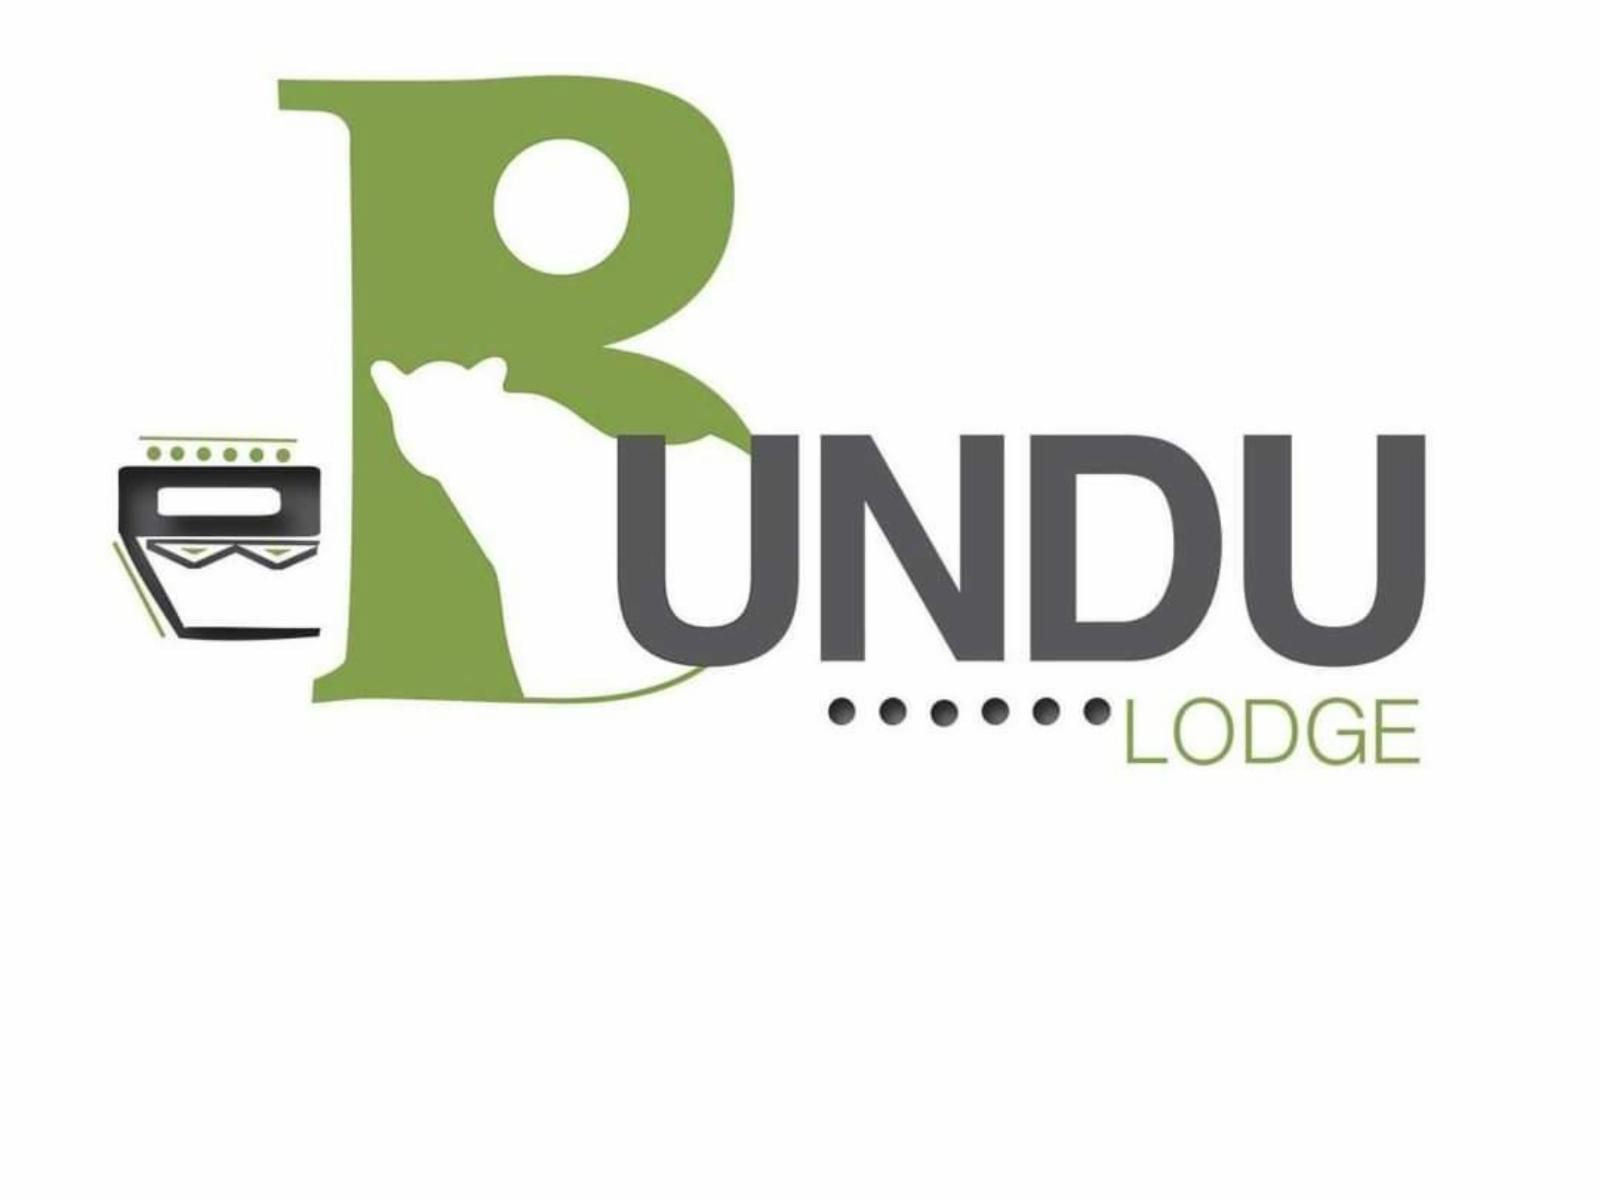 Ebundu Lodge Pty Ltd Nelspruit Mpumalanga South Africa Unsaturated, Bright